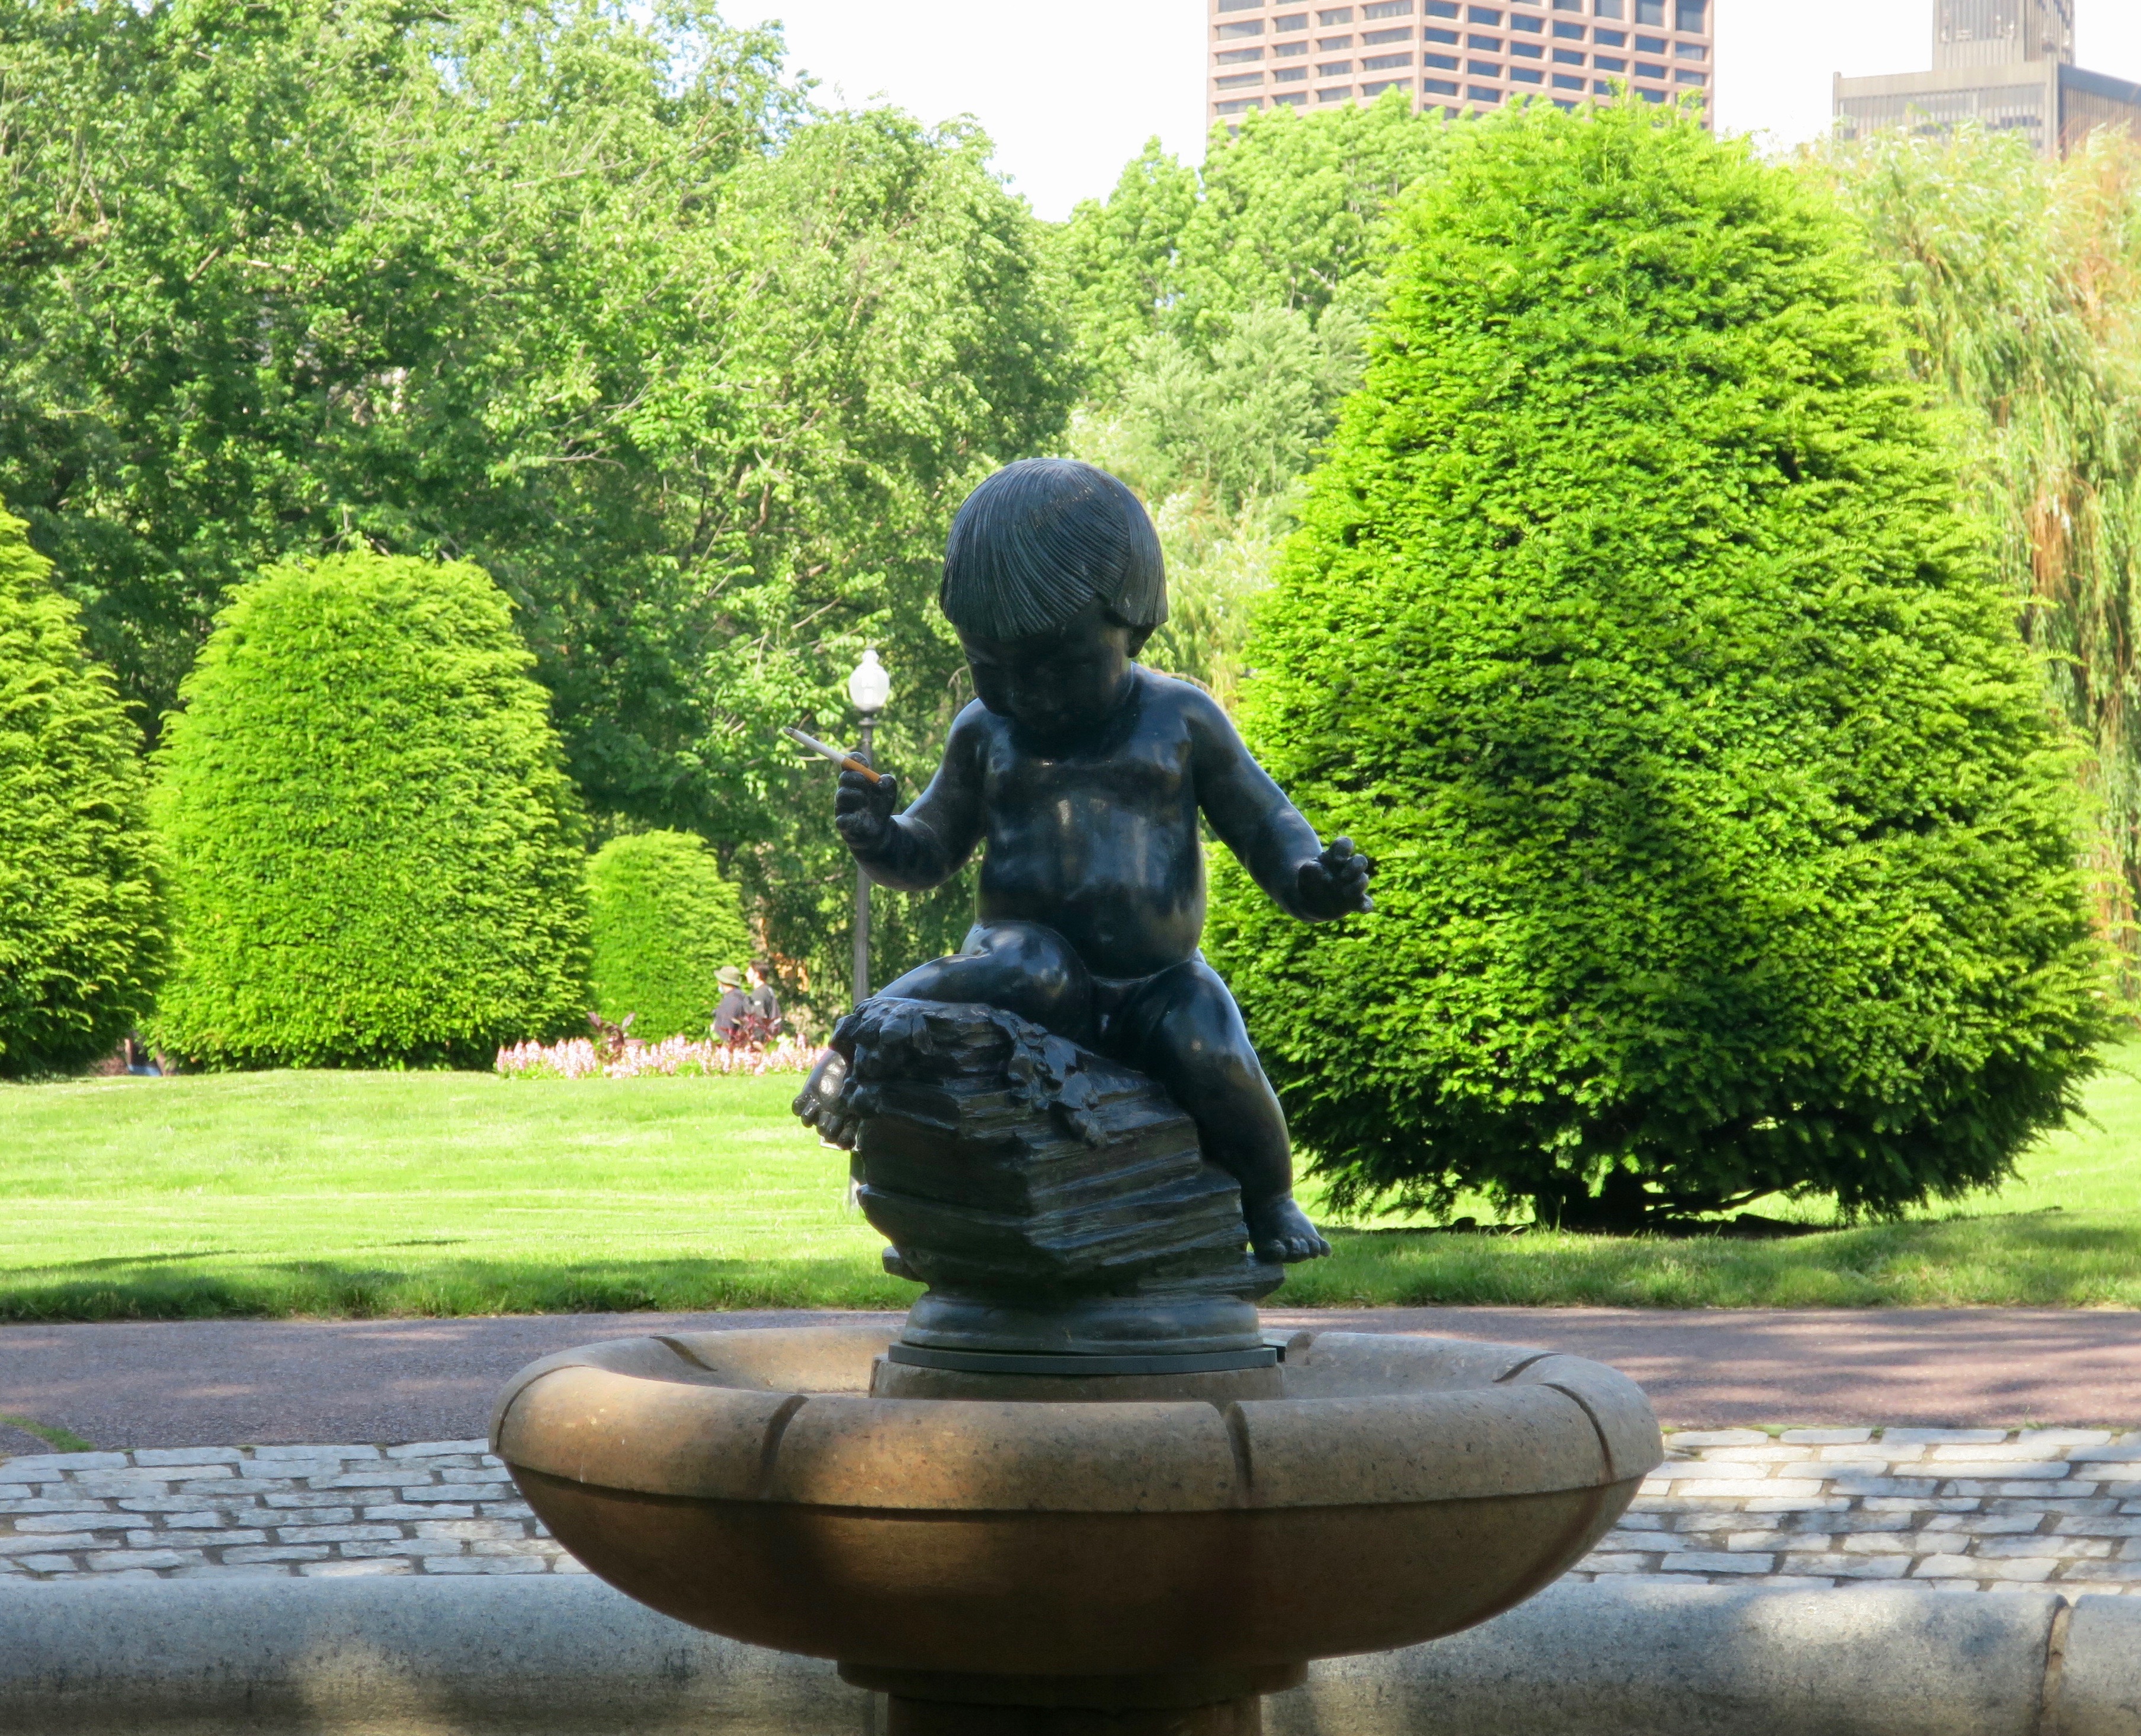 Small Child statue